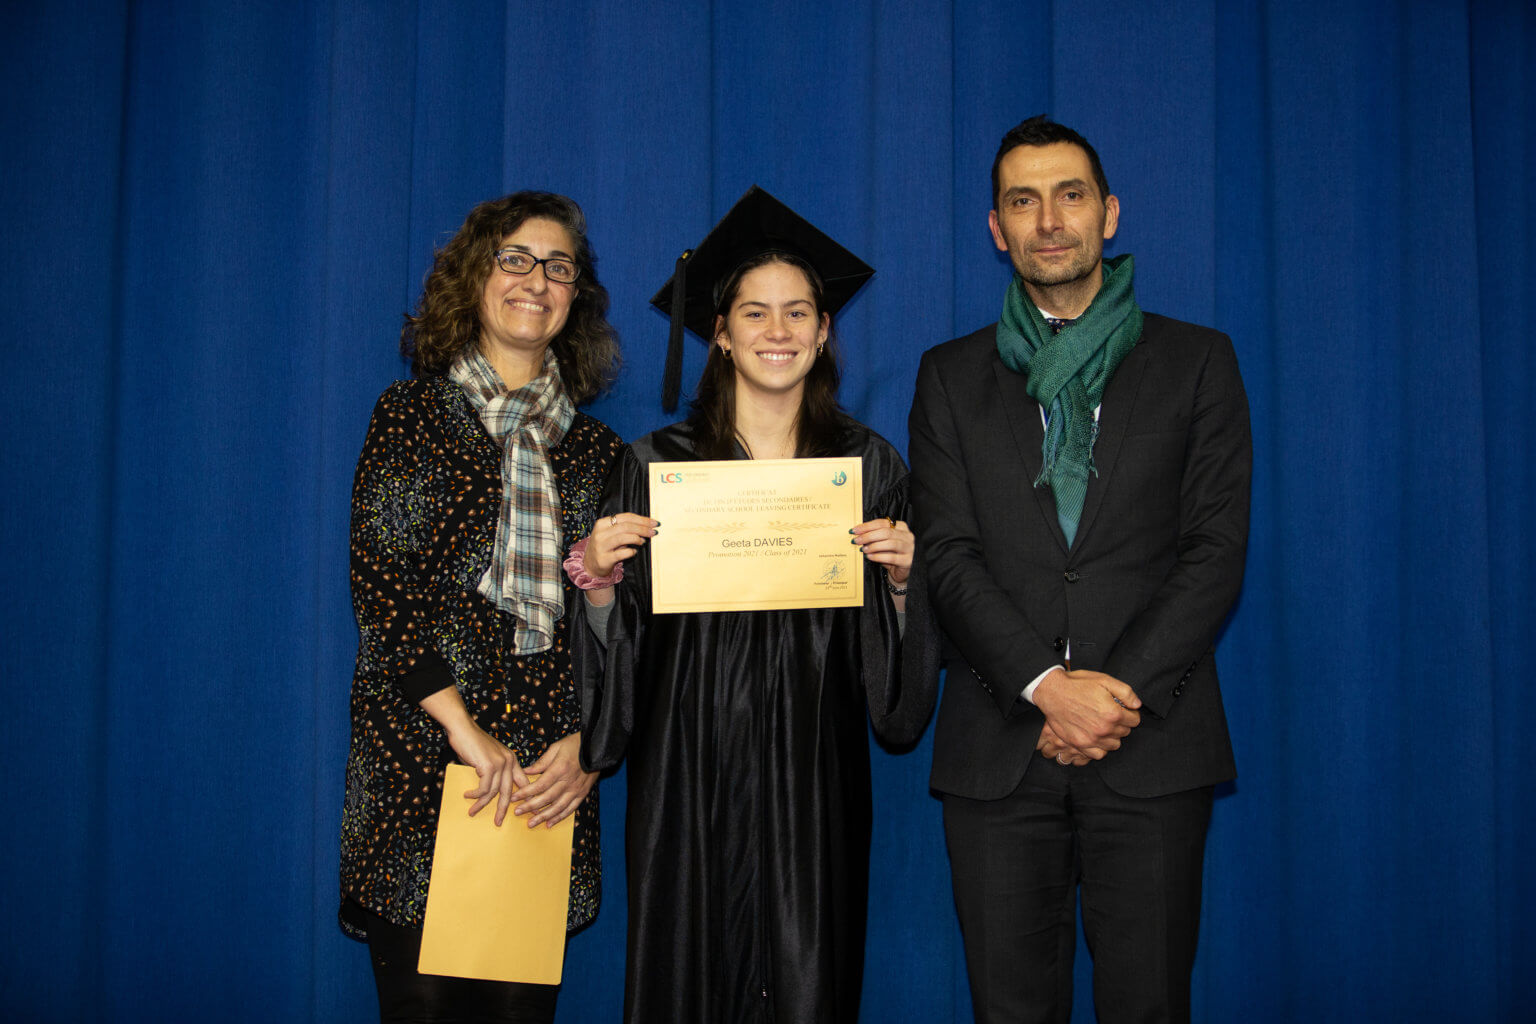 IB student graduates from Lycée Condorcet